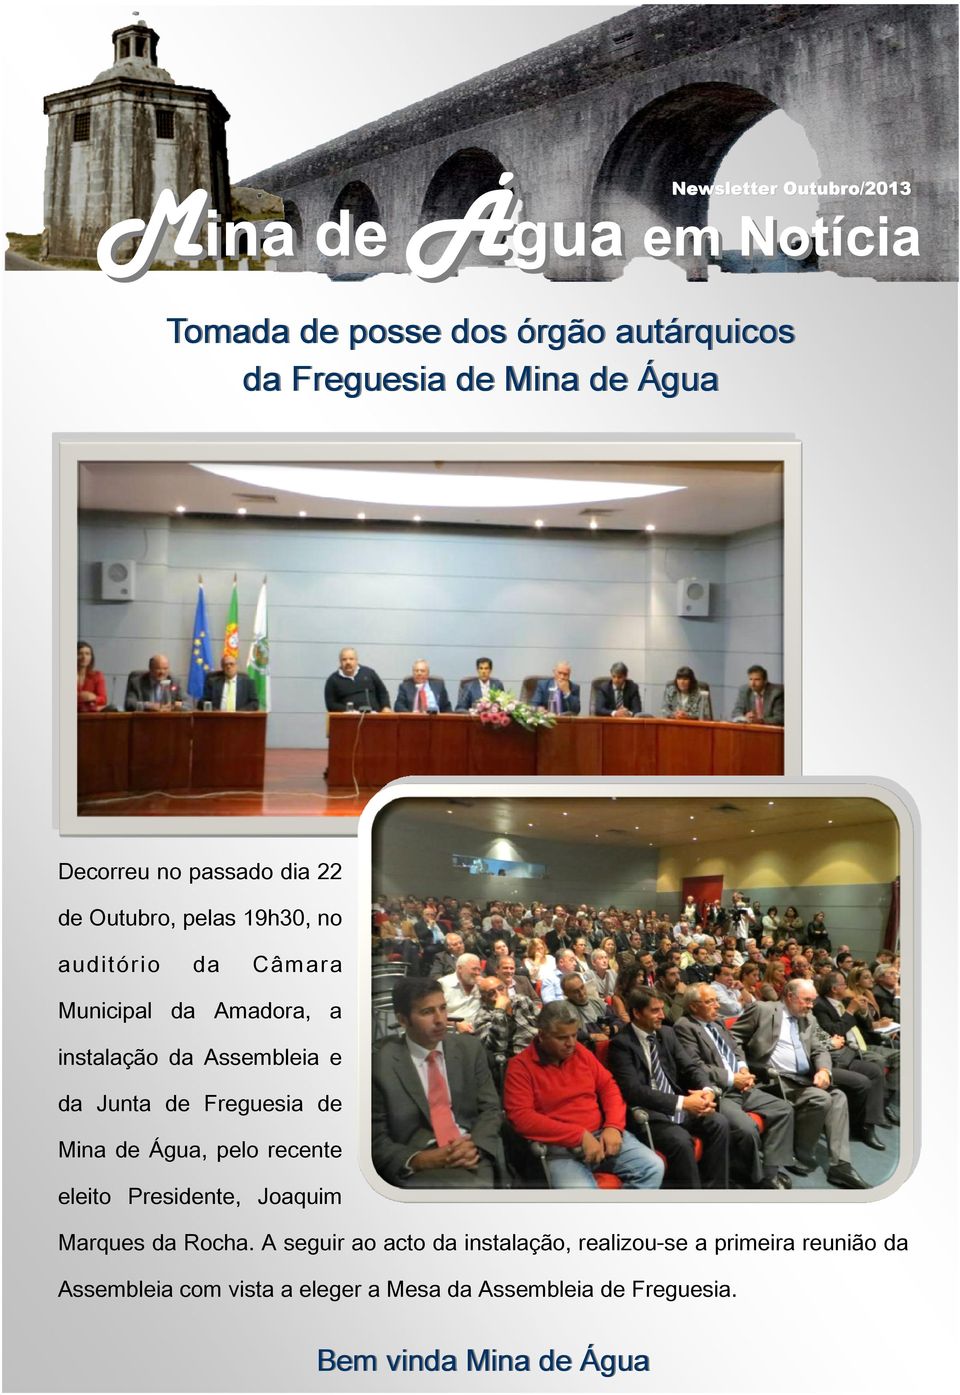 Assembleia e da Junta de Freguesia de Mina de Água, pelo recente eleito Presidente, Joaquim Marques da Rocha.